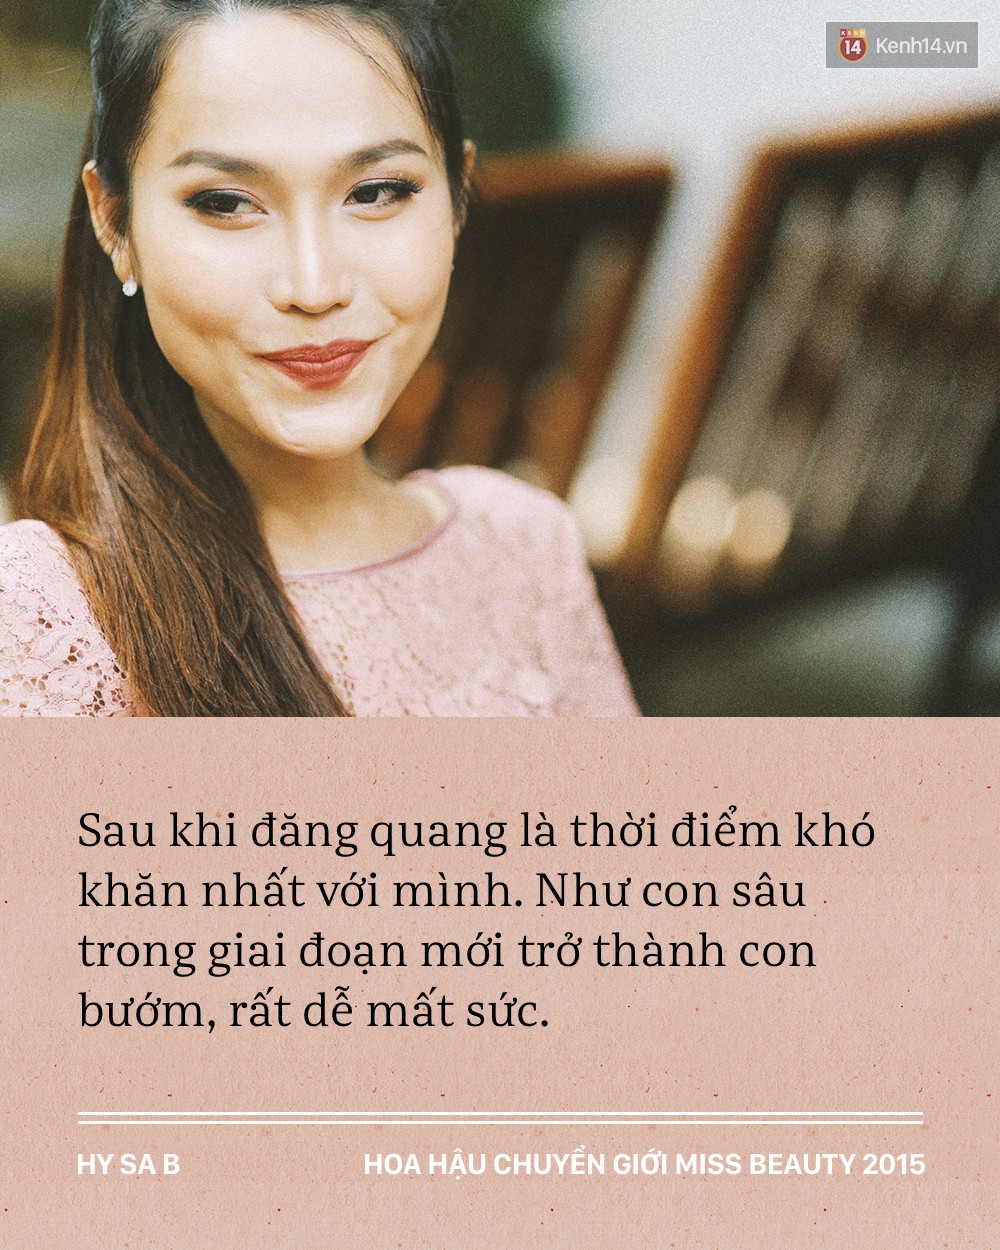 Hoa hậu chuyển giới Việt Nam đầu tiên sau hơn 2 năm đăng quang: Ai cũng nghĩ sau Miss Beauty thì đời mình lên mây - Ảnh 4.